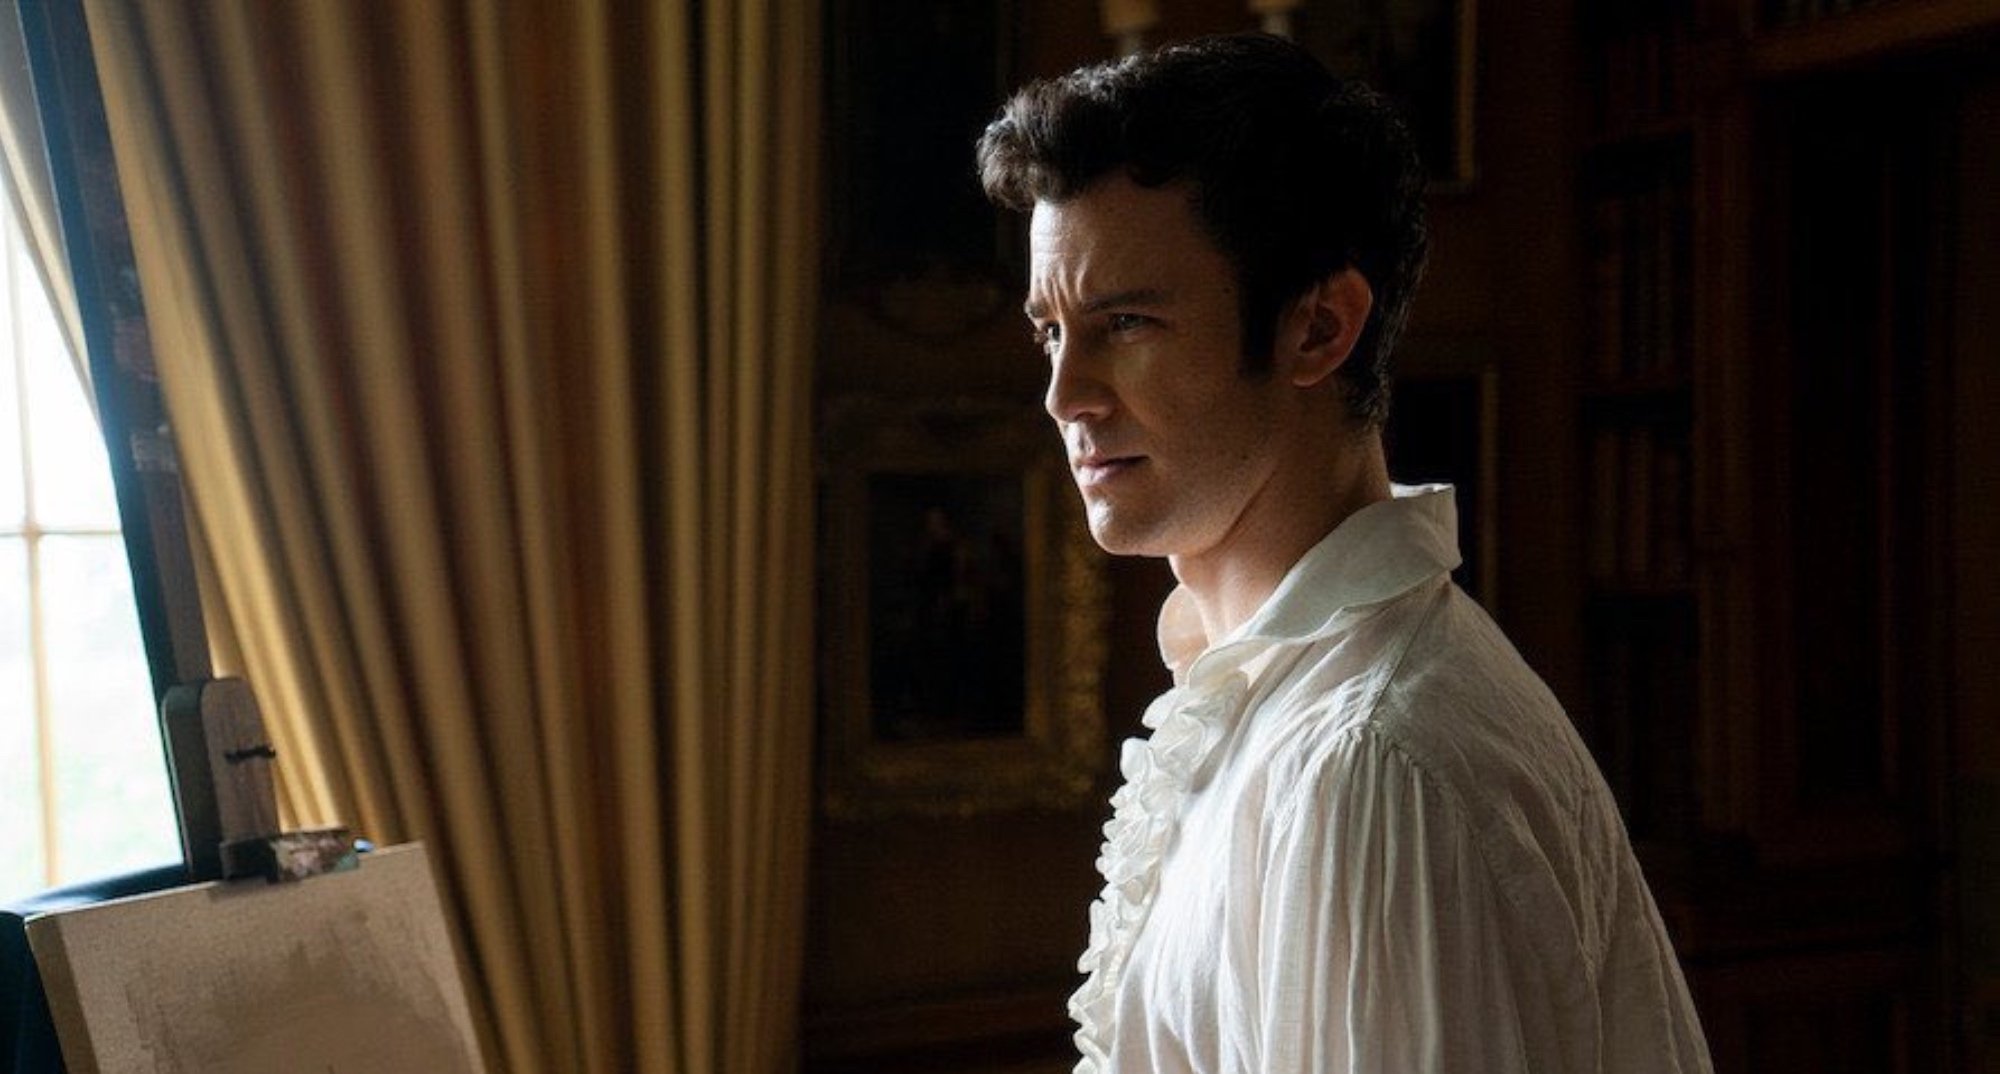 Benedict in 'Bridgerton' Season 2 wearing white shirt and painting.